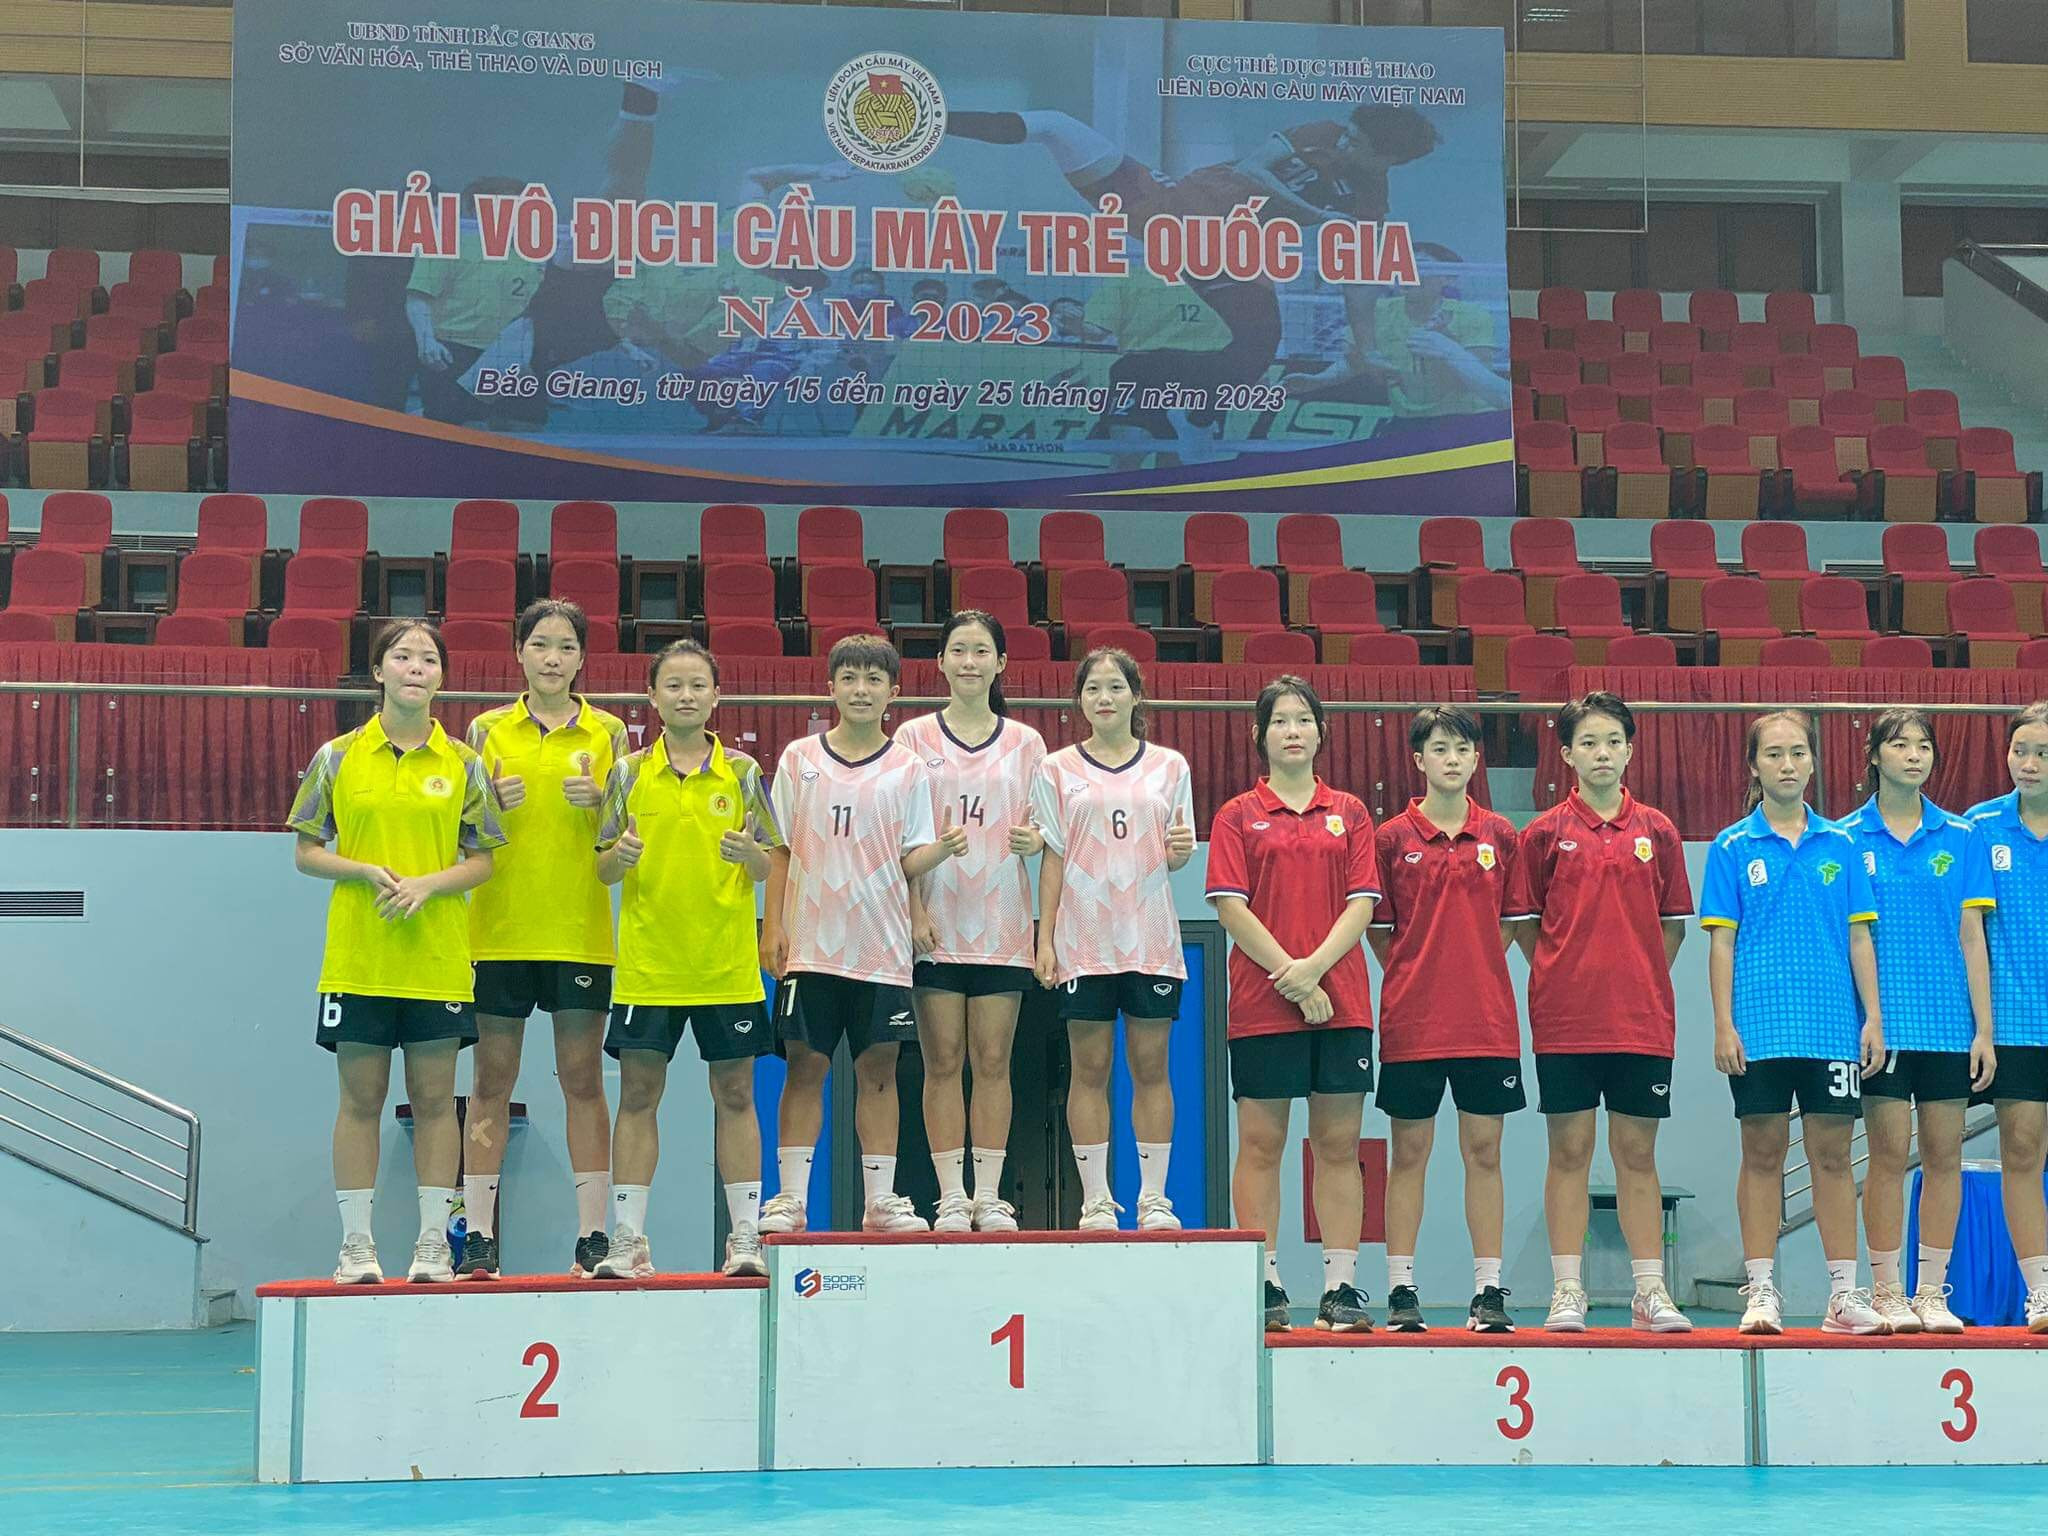 bna_Đào Thị Kim Oanh (số 6, áo hồng) và Trương Thanh Thảo (số 11, áo hồng) giành huy chương Vàng nội dung đội tuyển 3 tại Giải cầu mây trẻ toàn quốc năm 2023.jpg